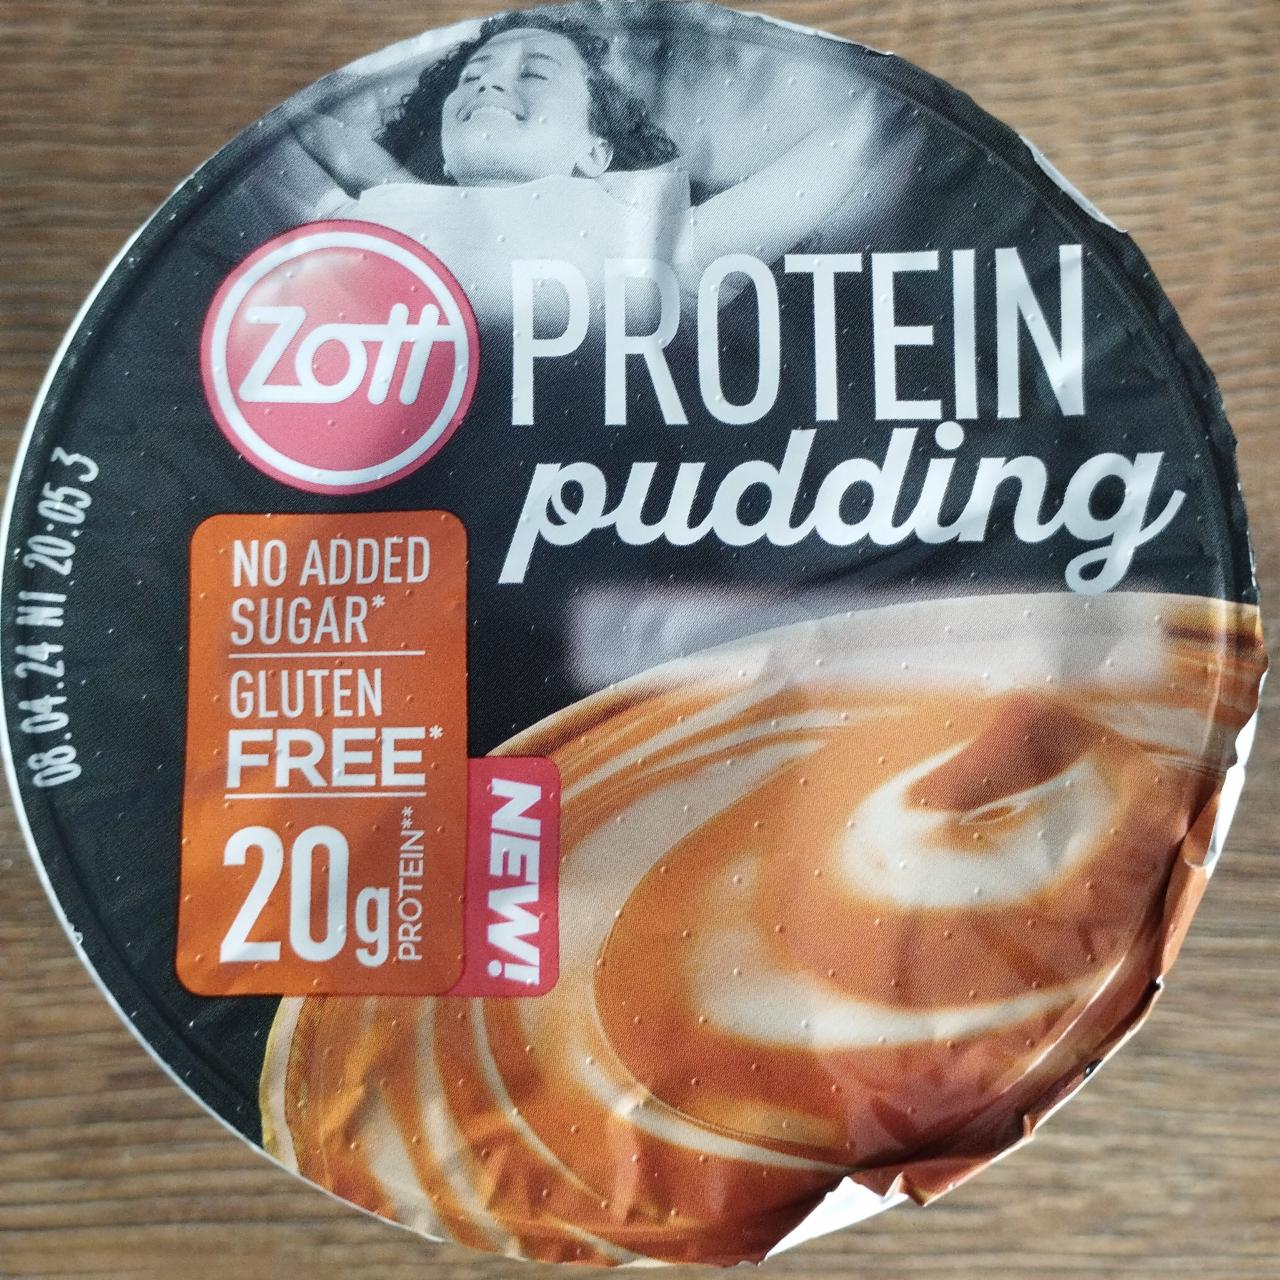 Zdjęcia - Protein pudding caramel Zott